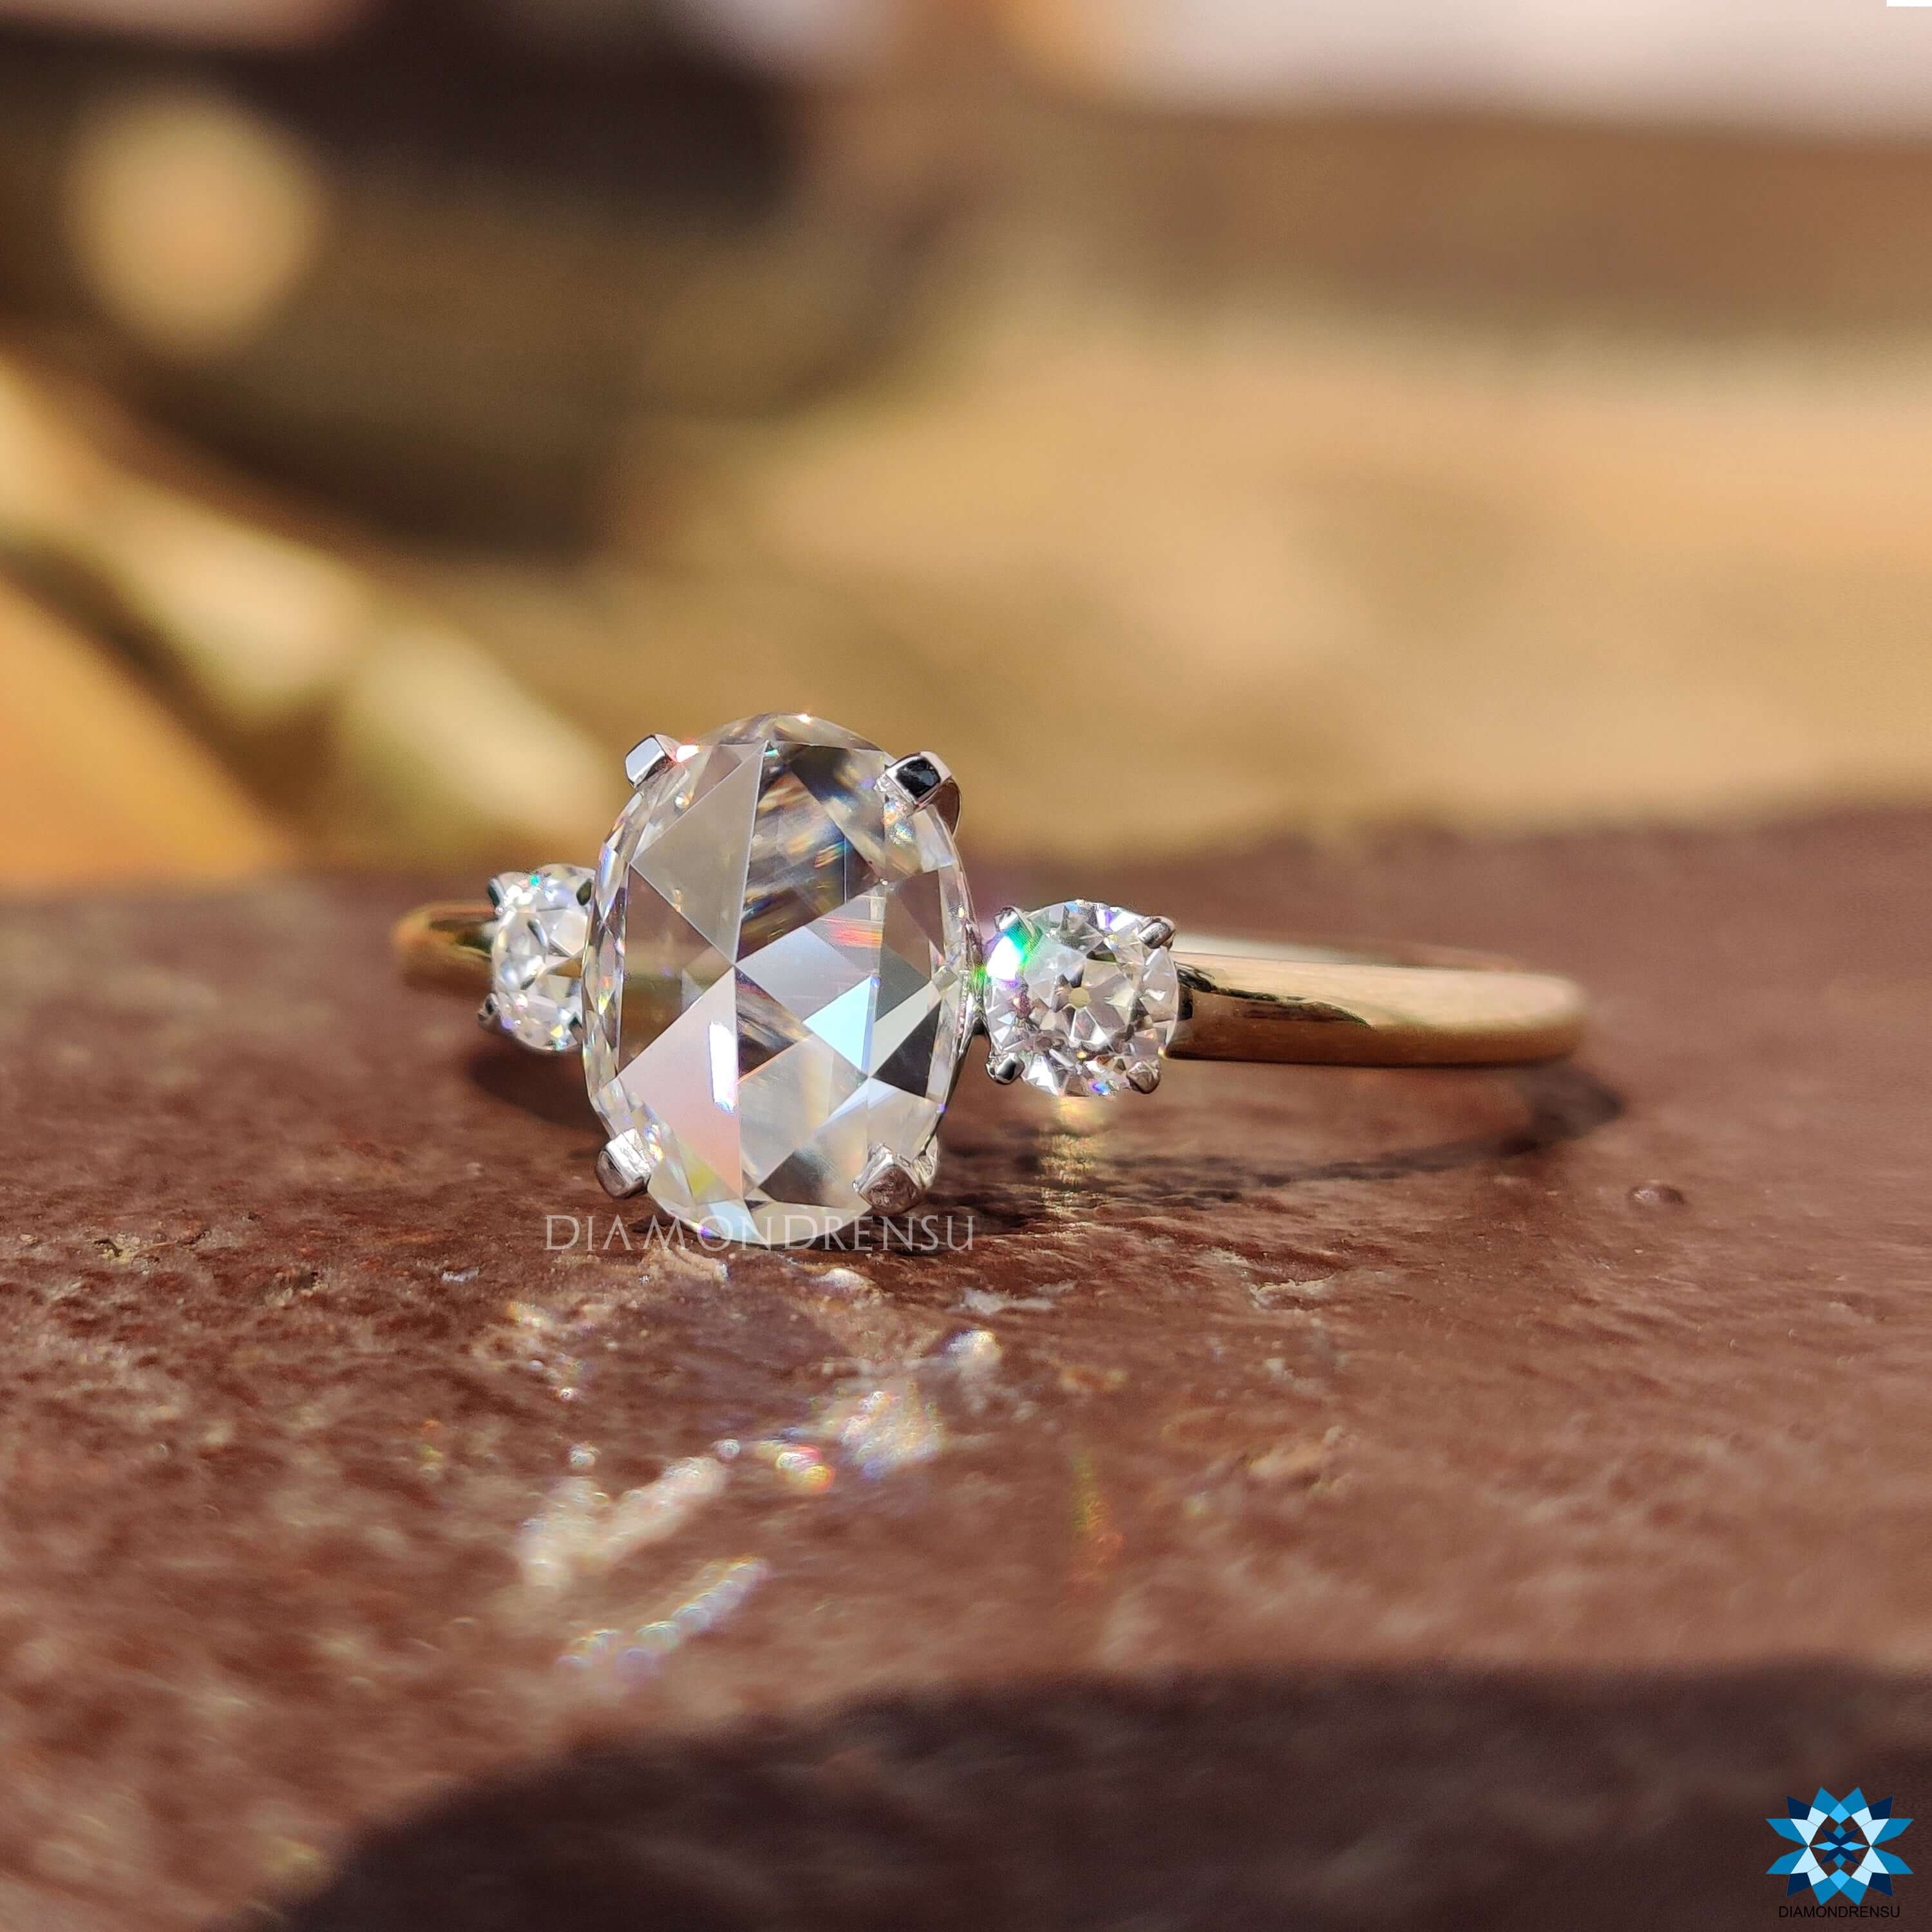 oval moissanite engagement ring - diamondrensu